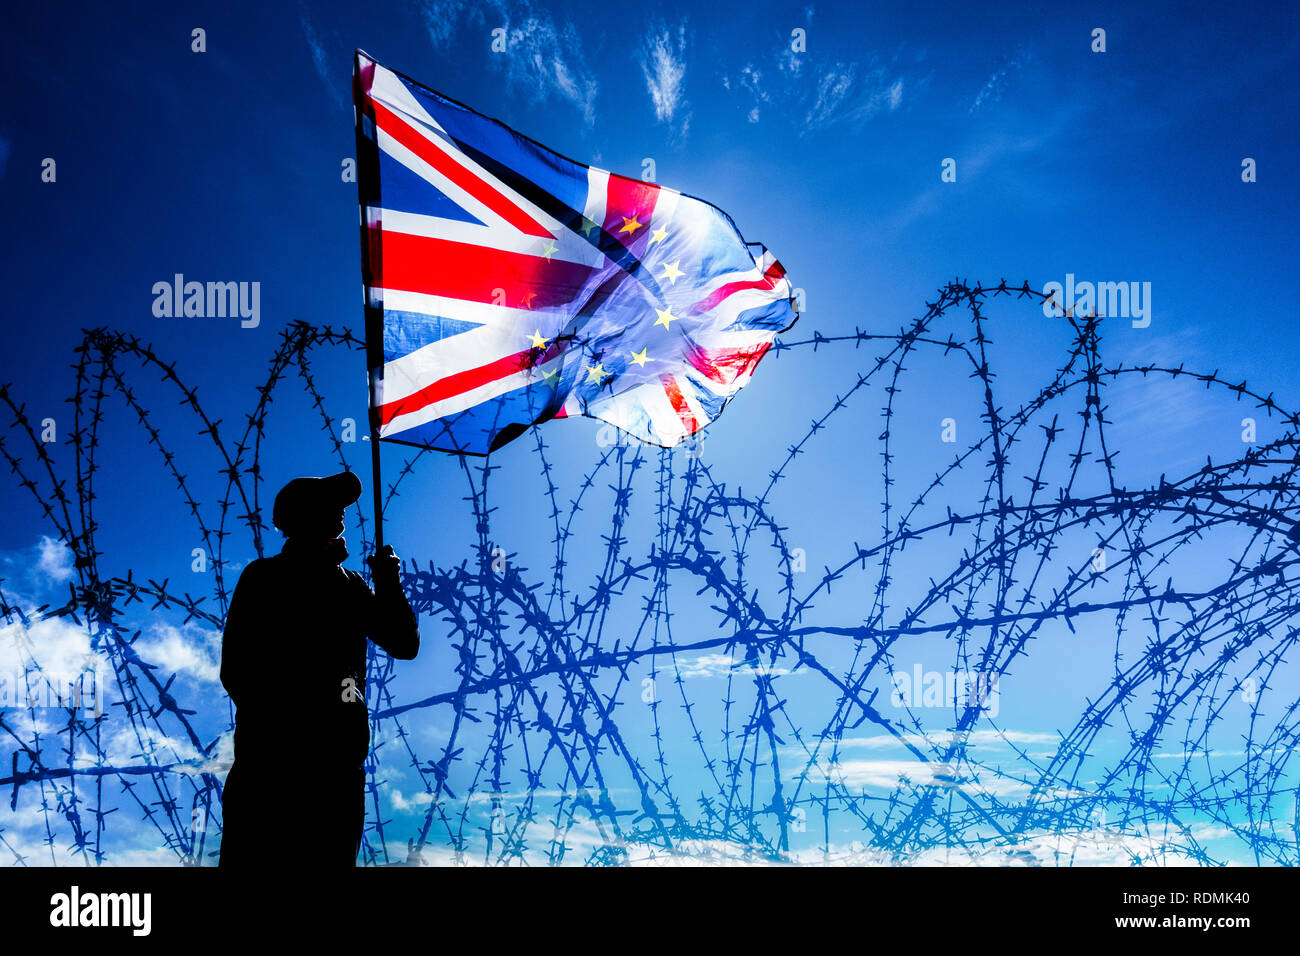 Brandissant l'homme Union Jack/drapeau de l'UE derrière razor wire fence : Brexit, asile, immigration, contrôle des frontières de l'image concept... Banque D'Images